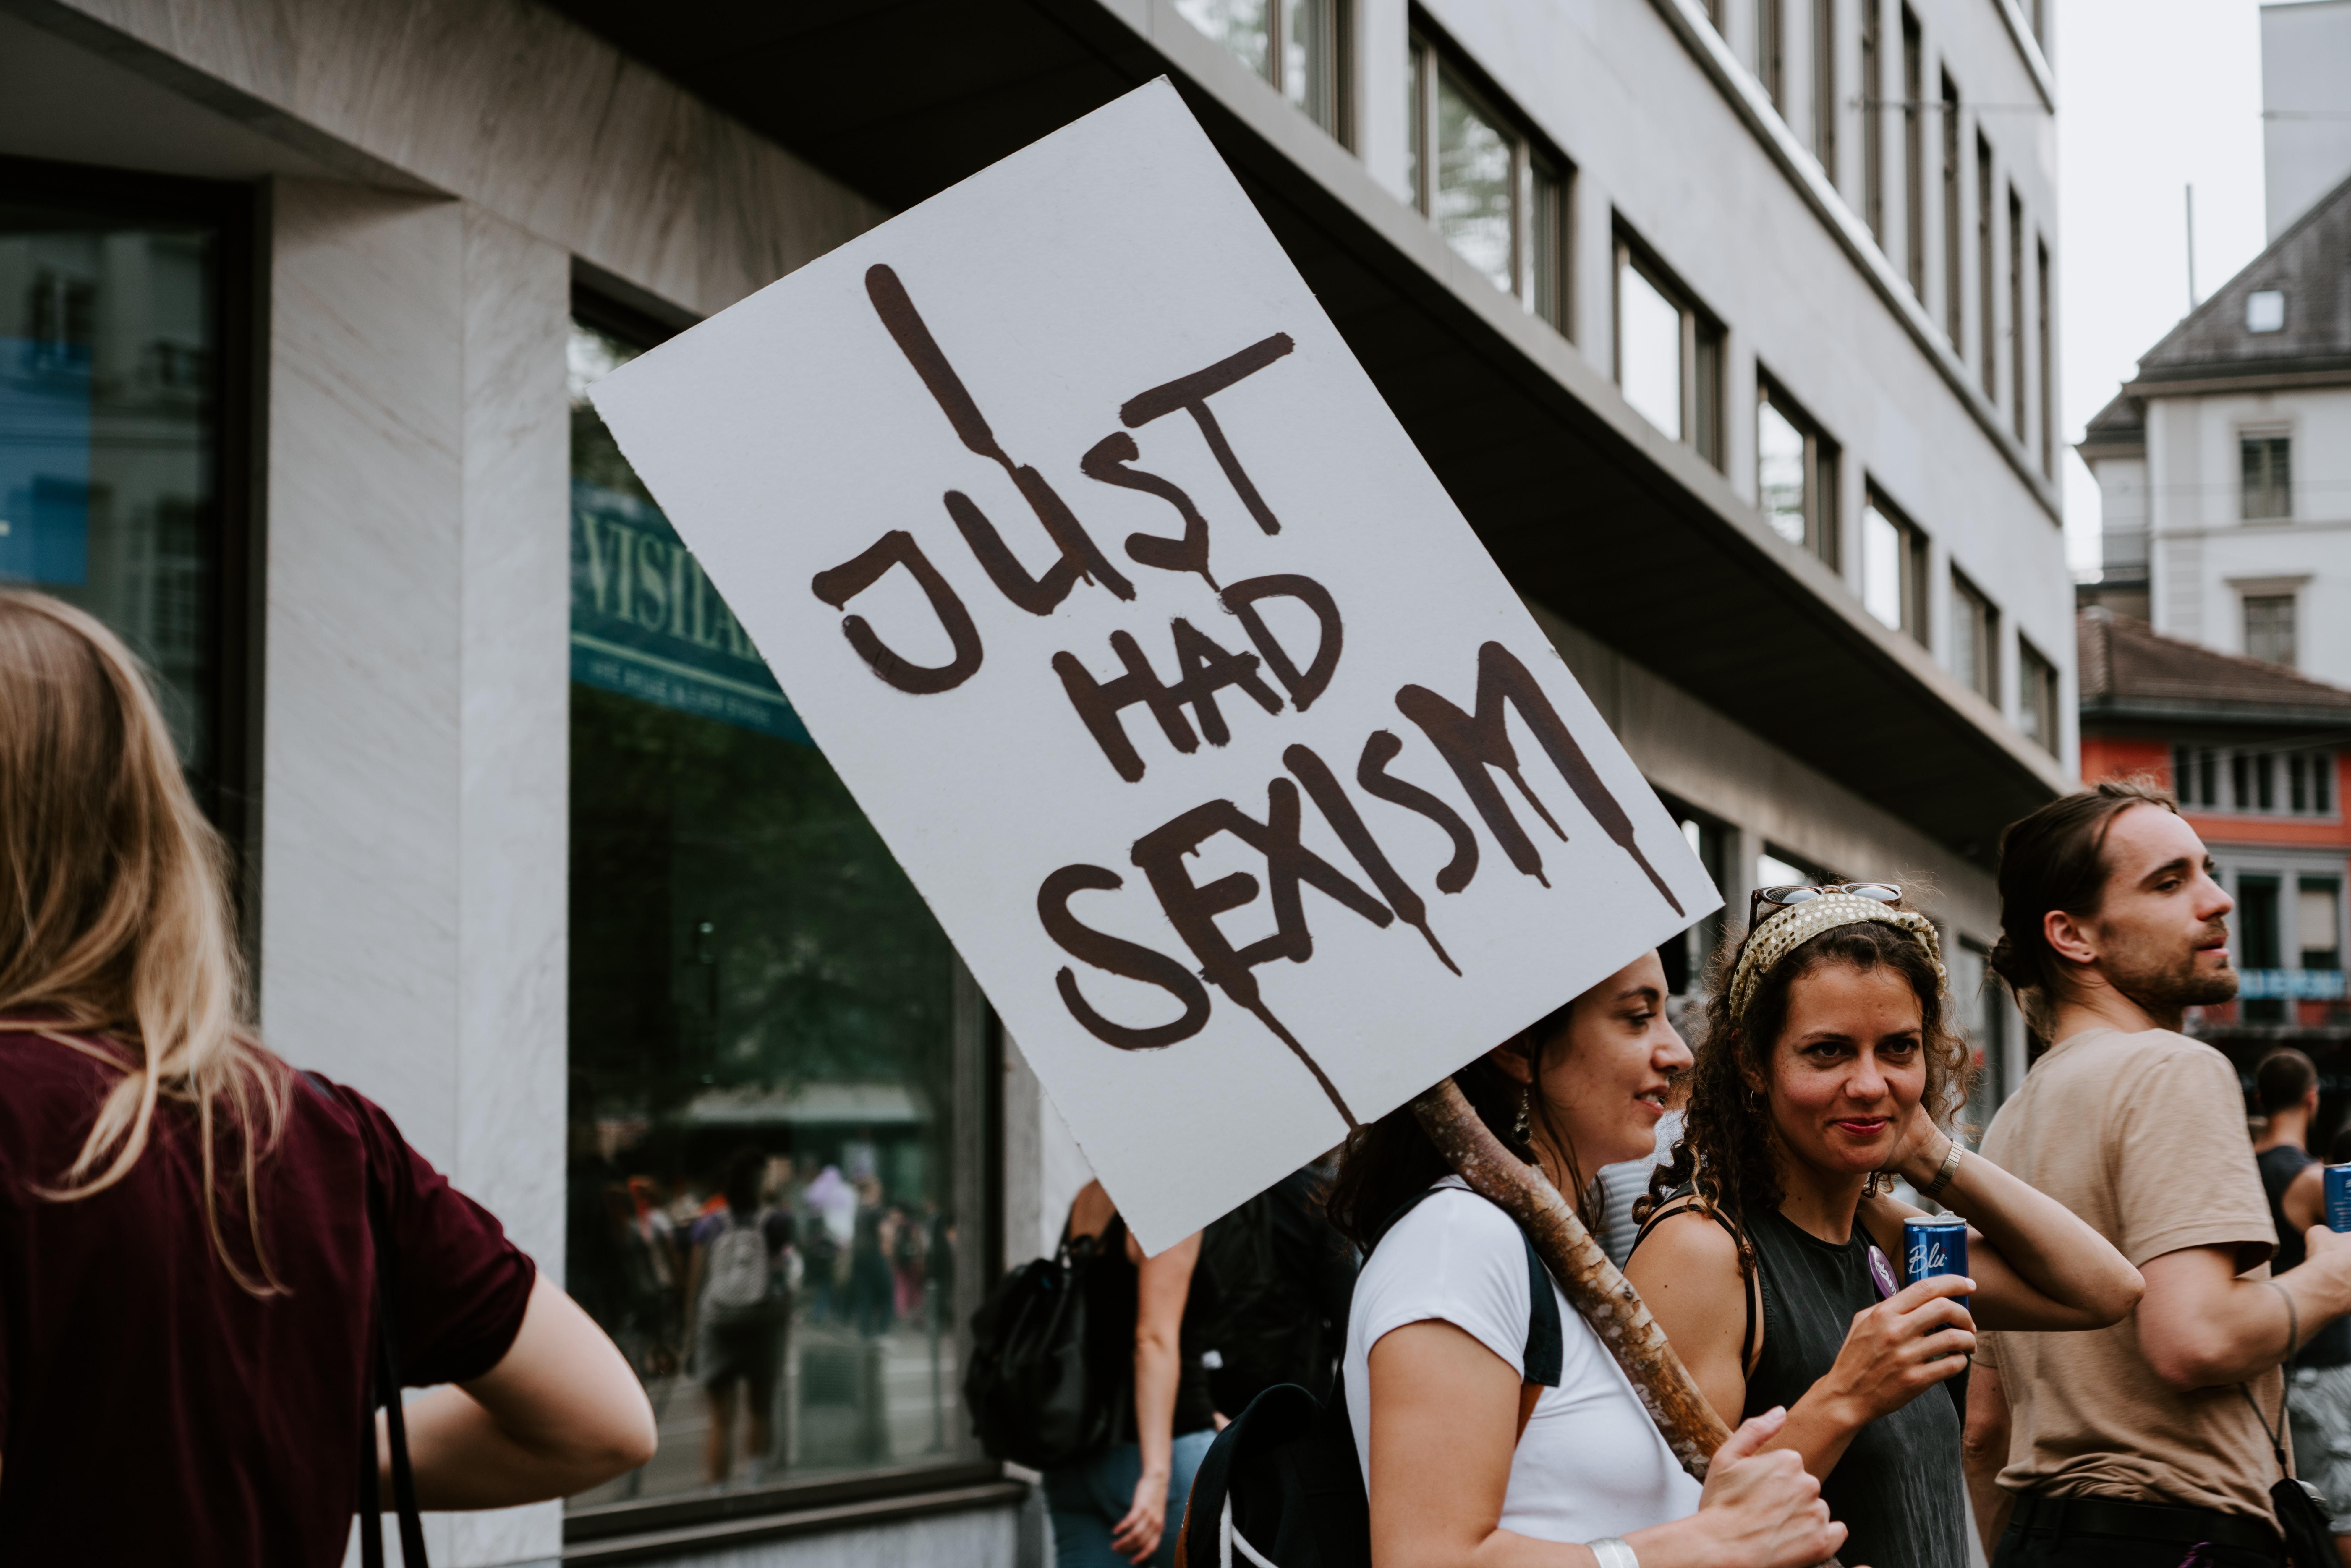 Egy nő szeximussal kapcsolatos táblát tart egy tüntetésen